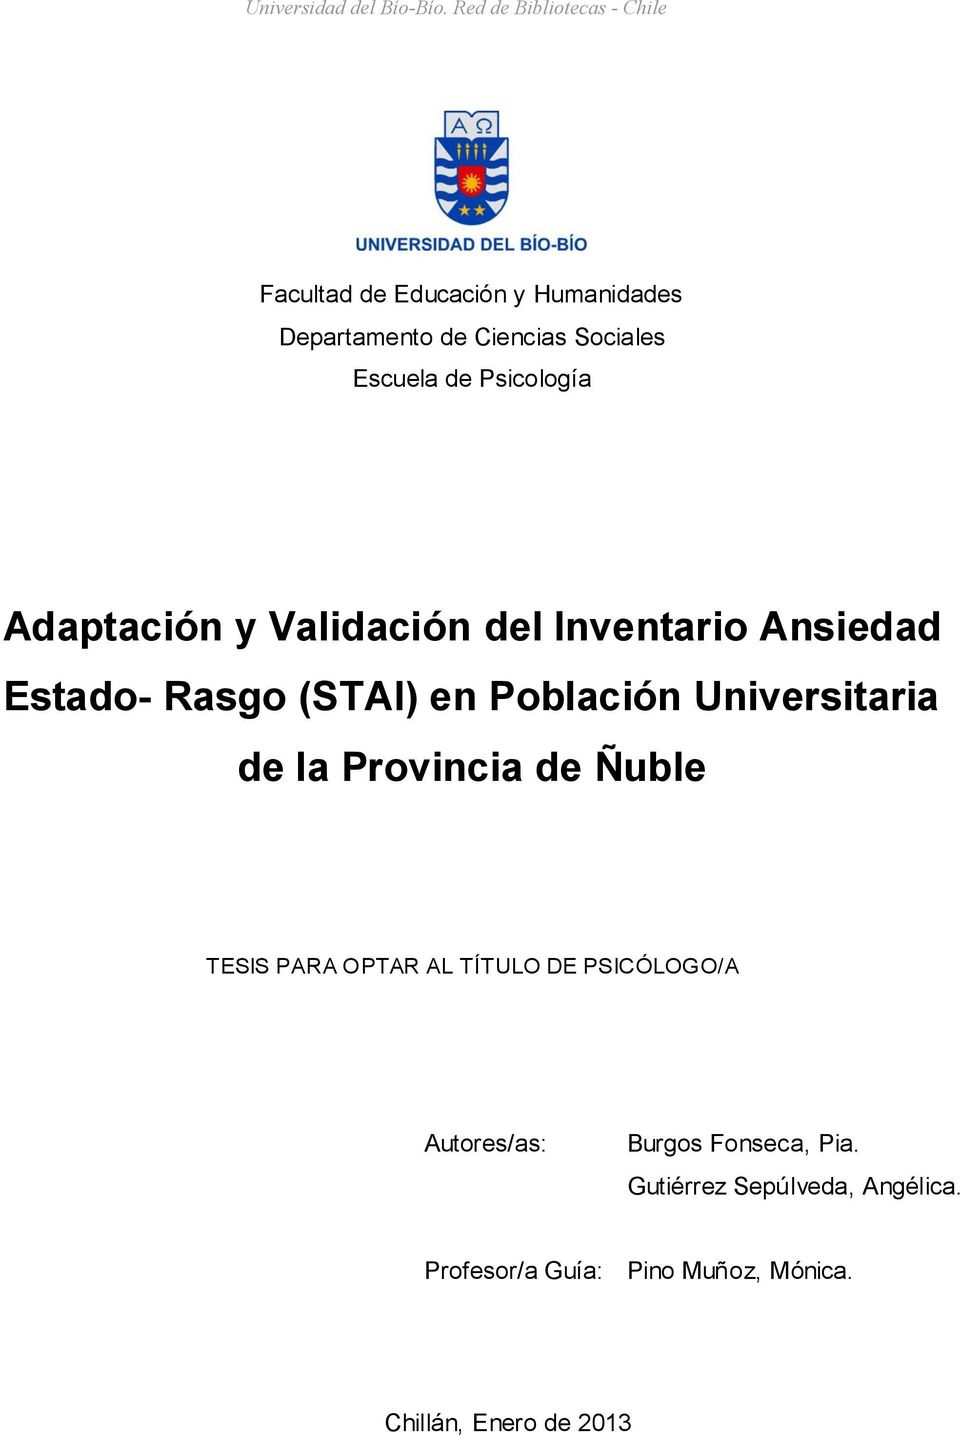 Universitaria de la Provincia de Ñuble TESIS PARA OPTAR AL TÍTULO DE PSICÓLOGO/A Autores/as: